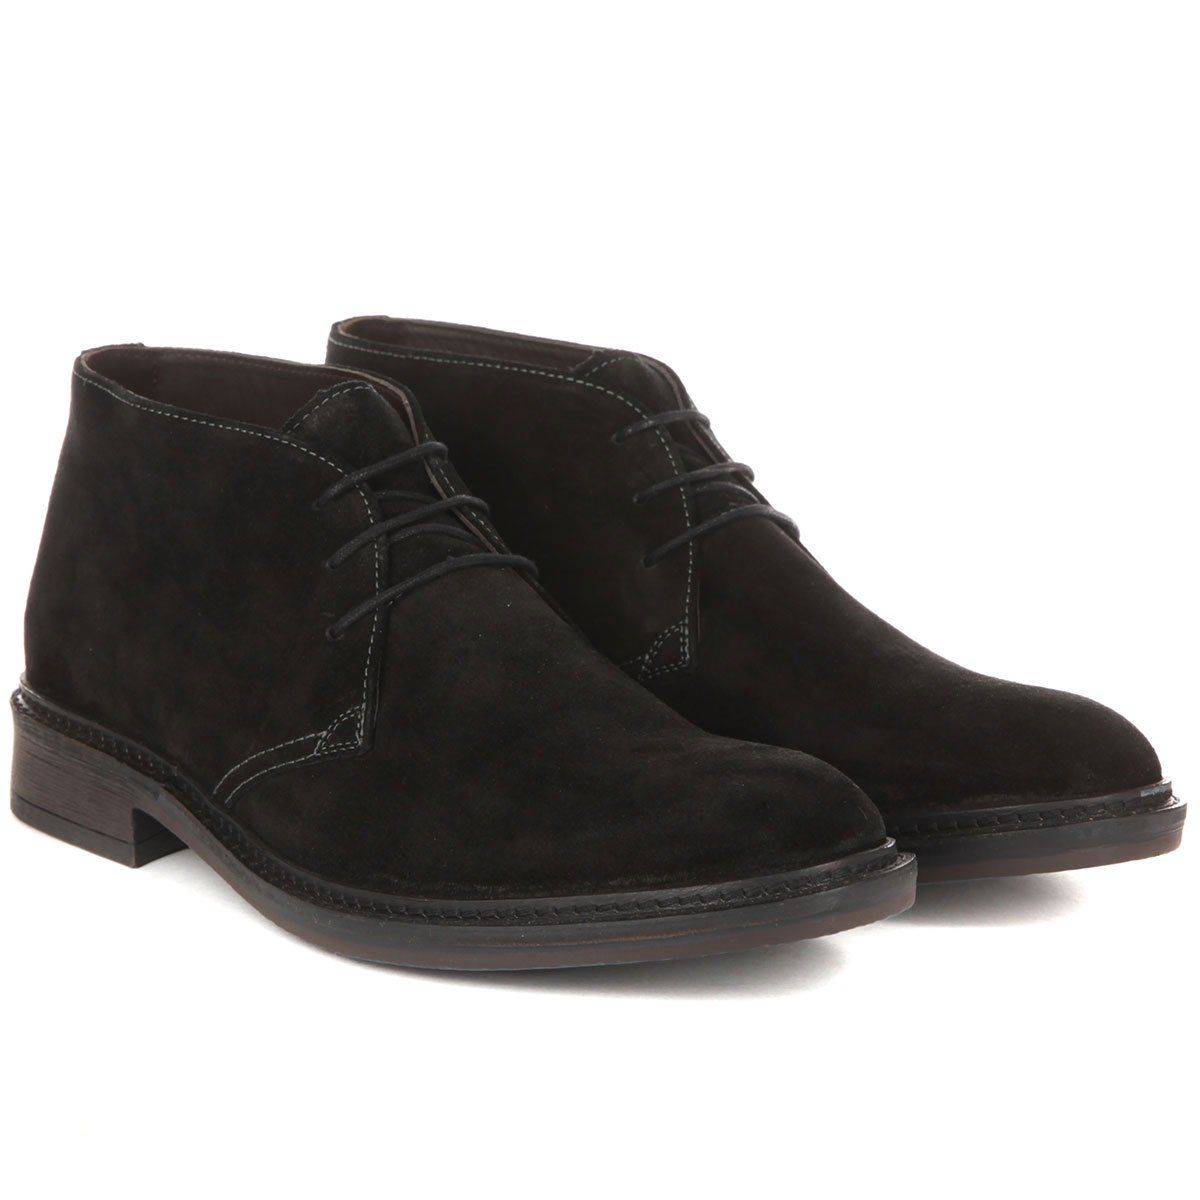 Мужские ботинки Mahony(ROVIGO B1 17333239), черные